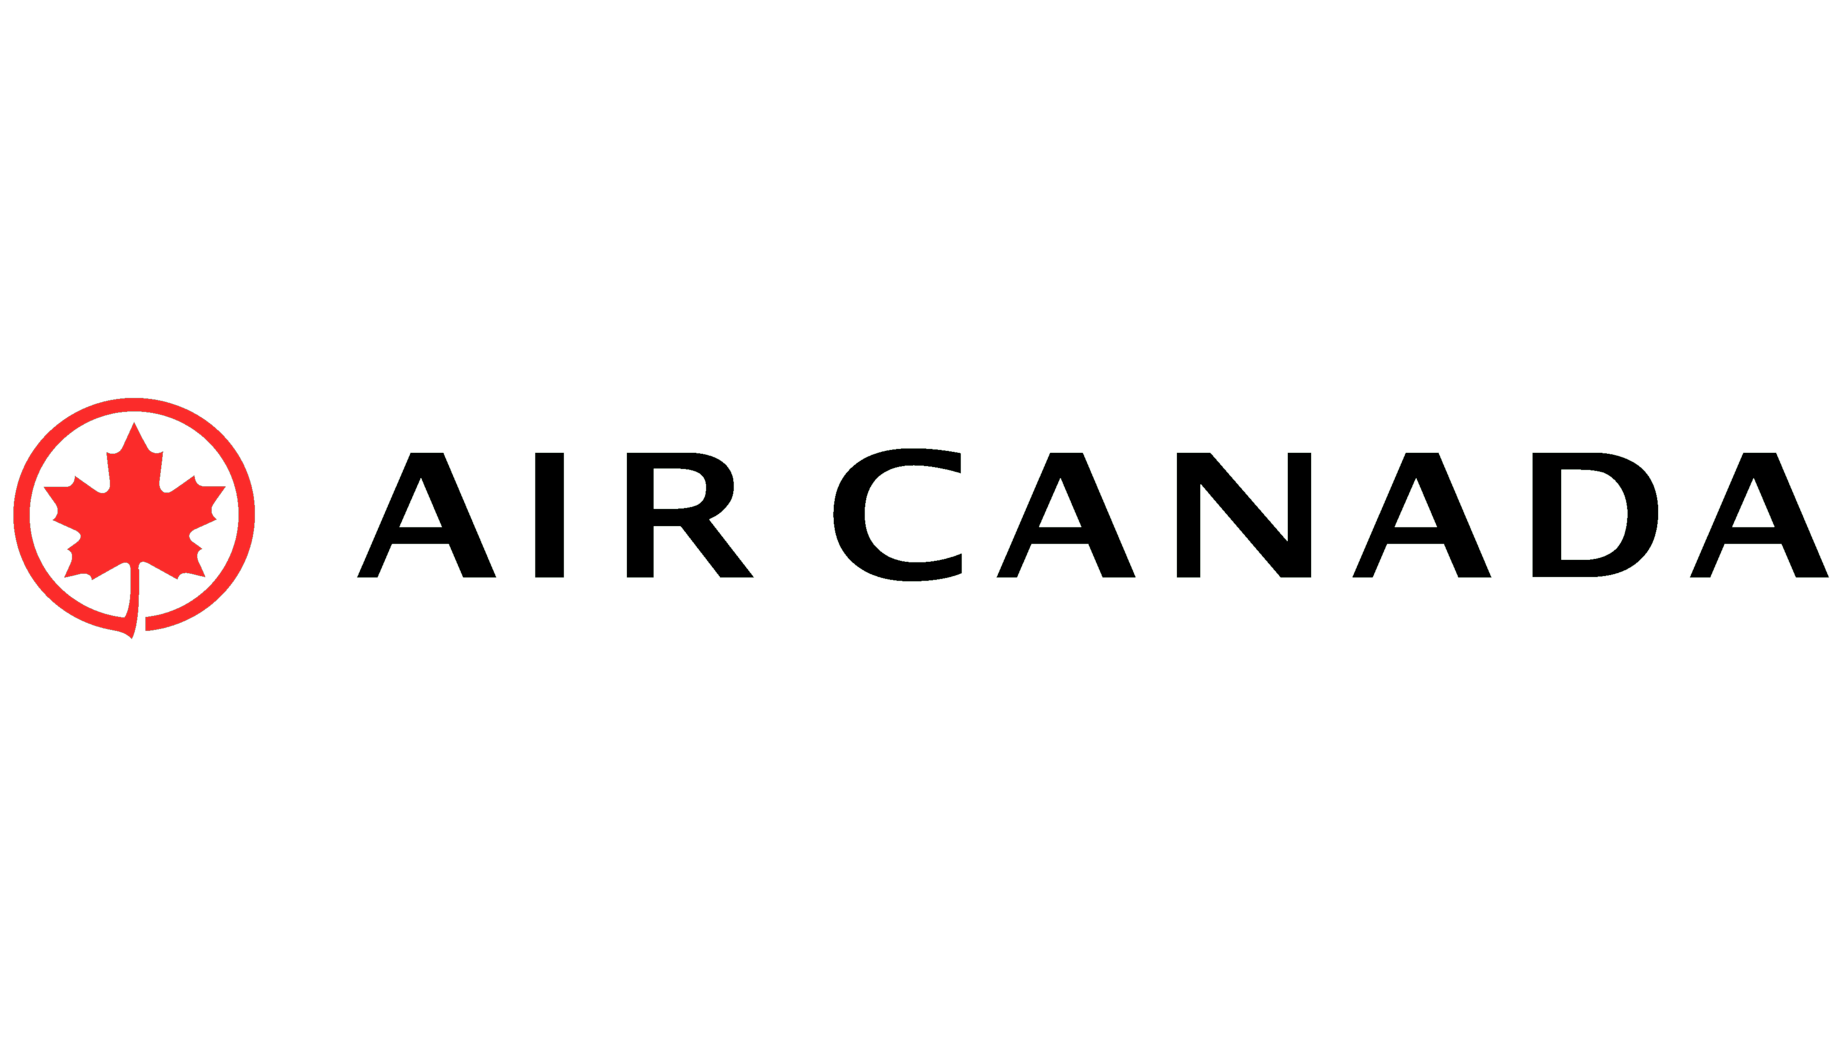 Air canada symbol 1